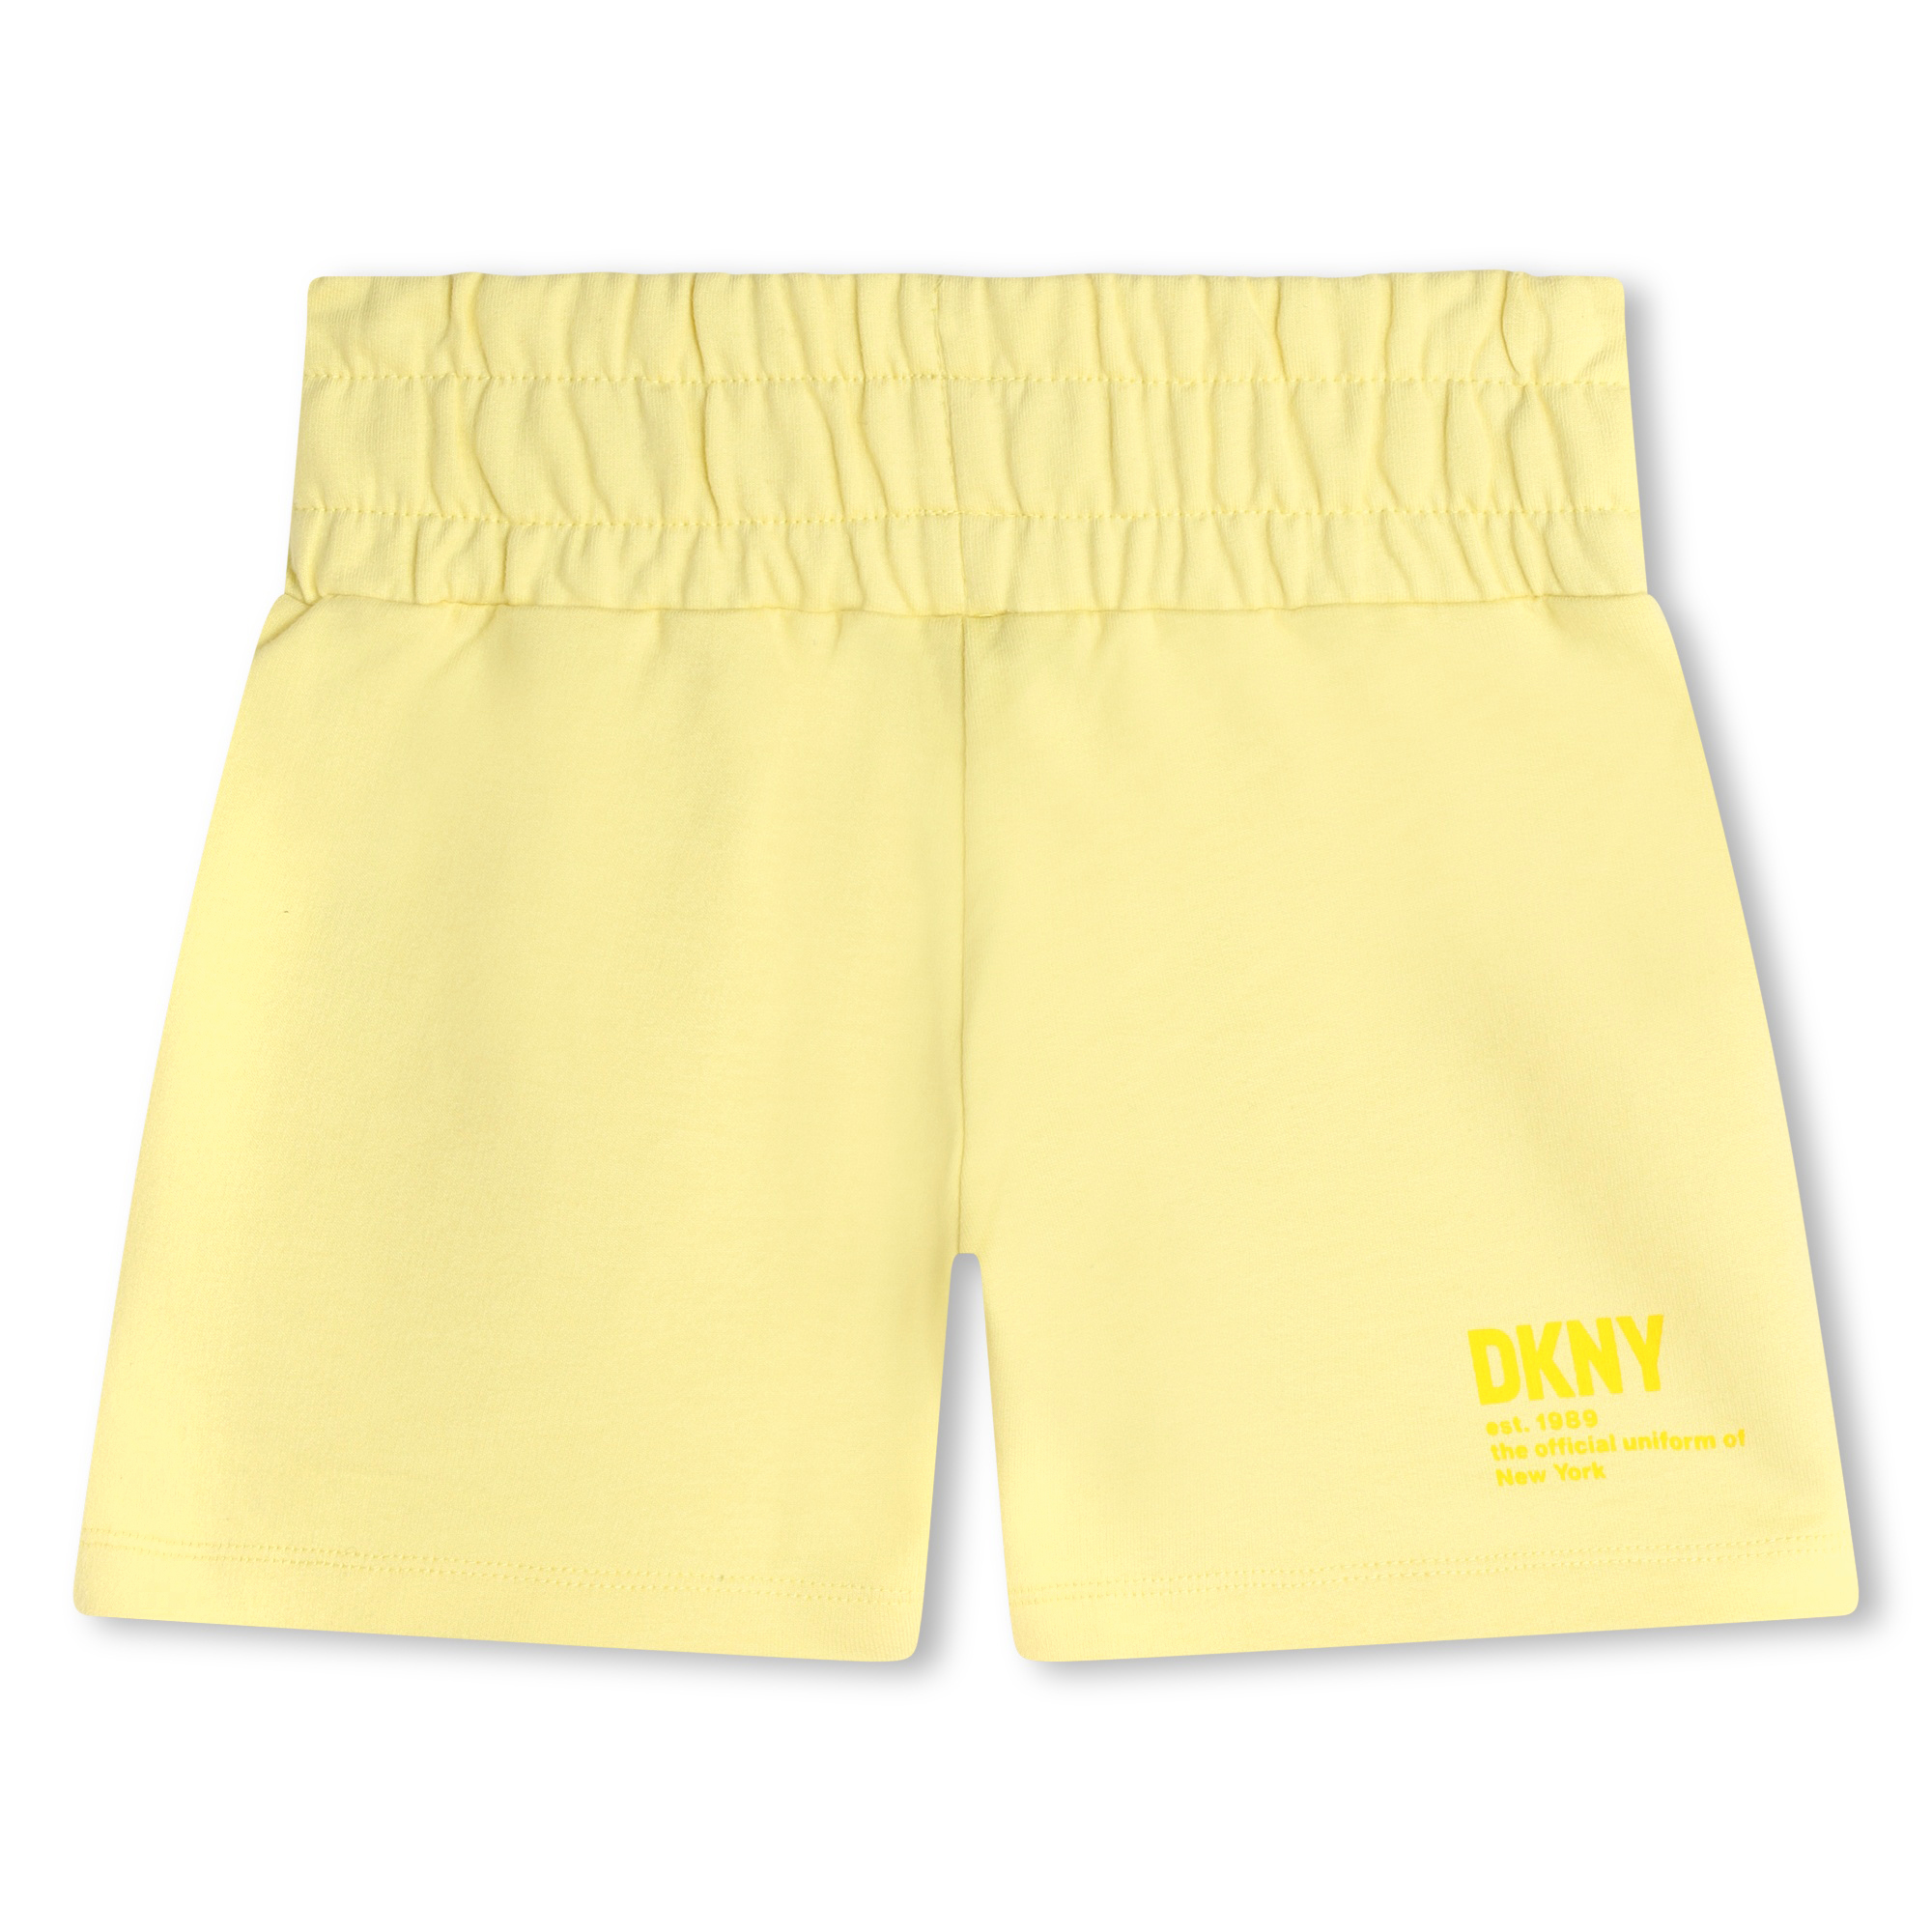 Shorts in felpa DKNY Per BAMBINA